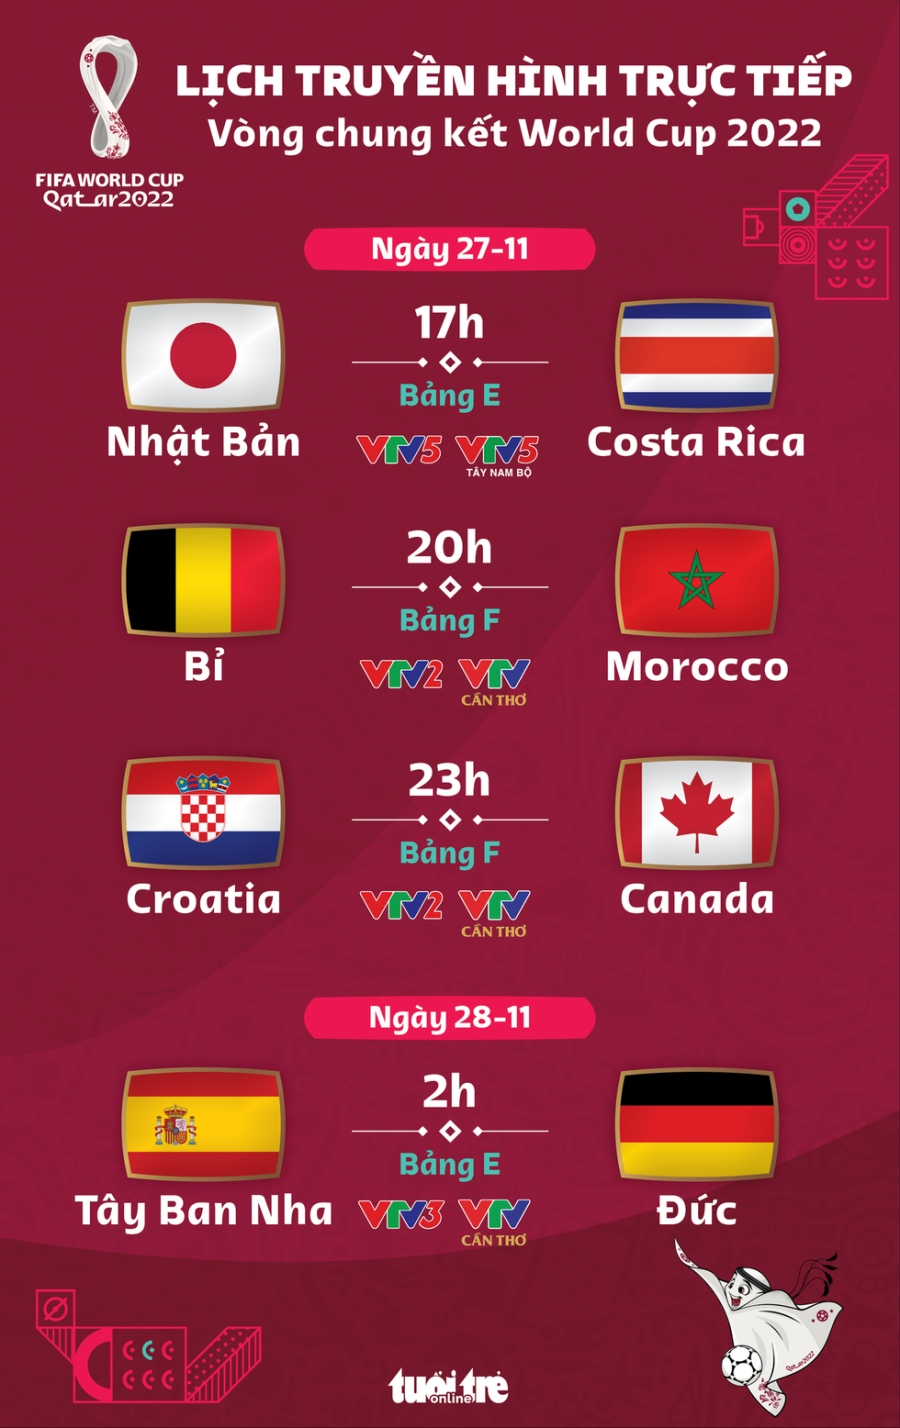 Lịch trực tiếp World Cup 2022 ngày 27-11: Tây Ban Nha - Đức, Nhật Bản - Costa Rica - Ảnh 1.